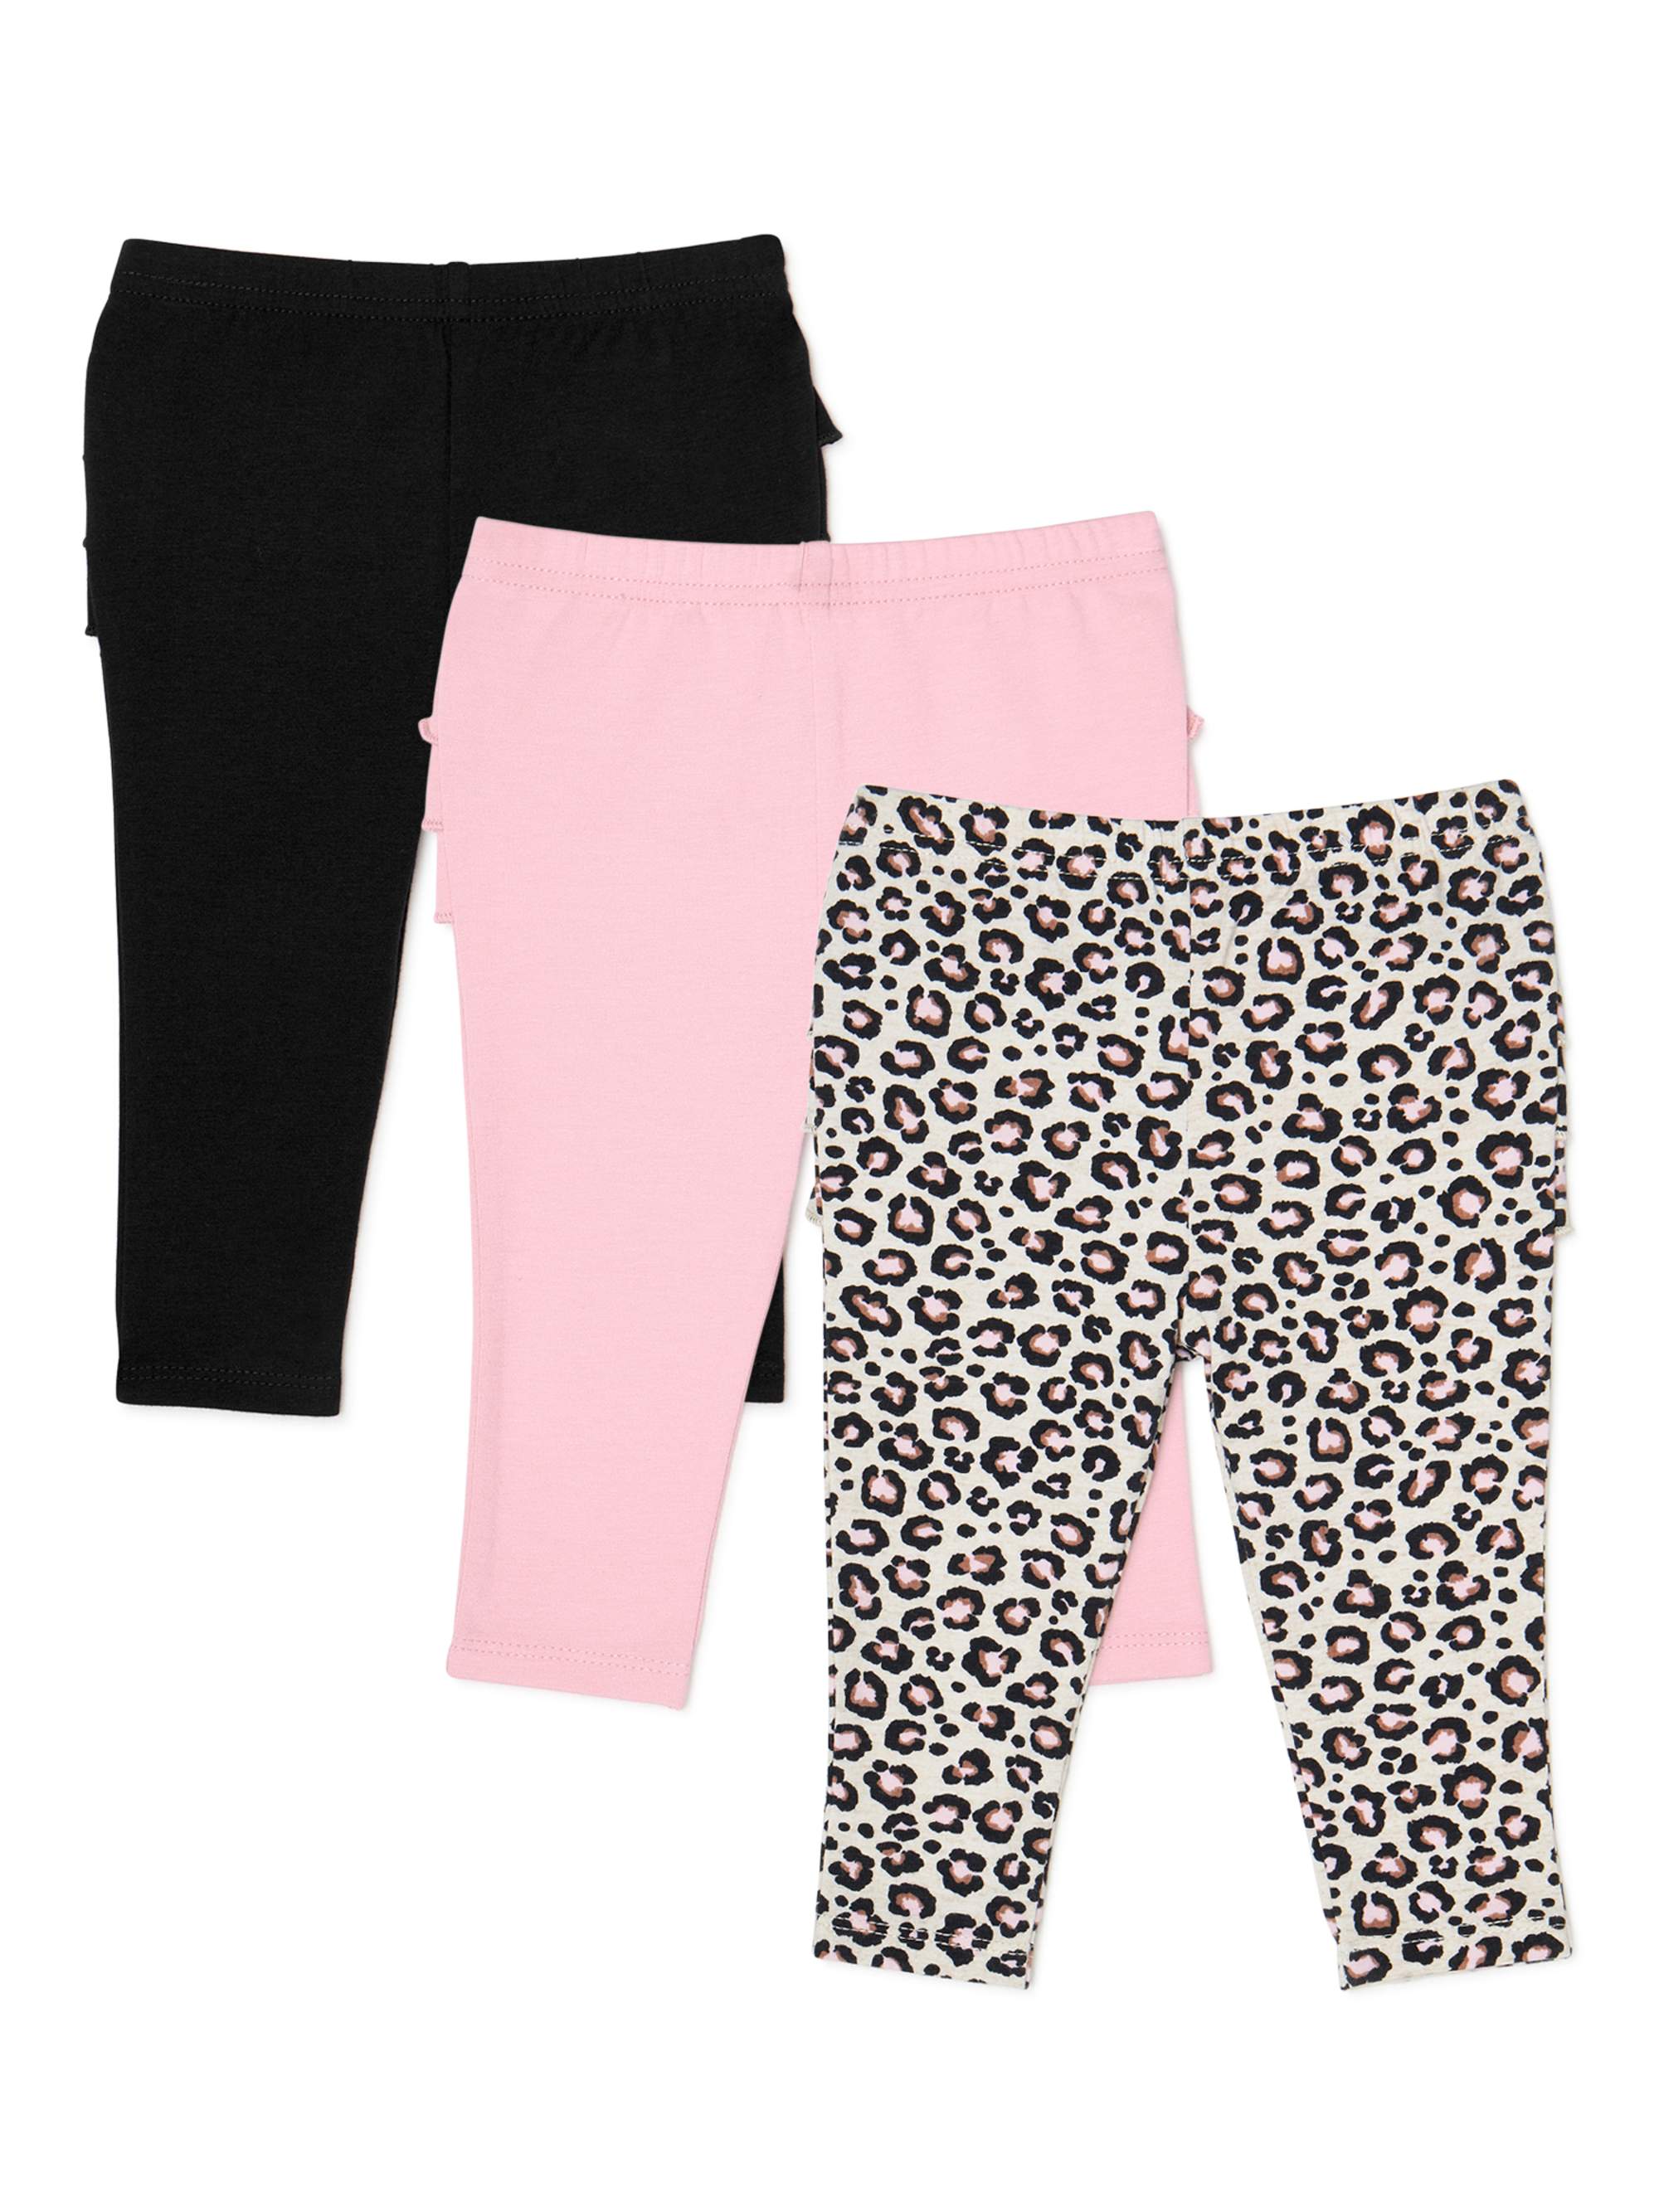 Littletown Garanimals Baby Girl Leopard Print Ruffle Leggings, 3-Pack -  Online Luxury Store for Kids